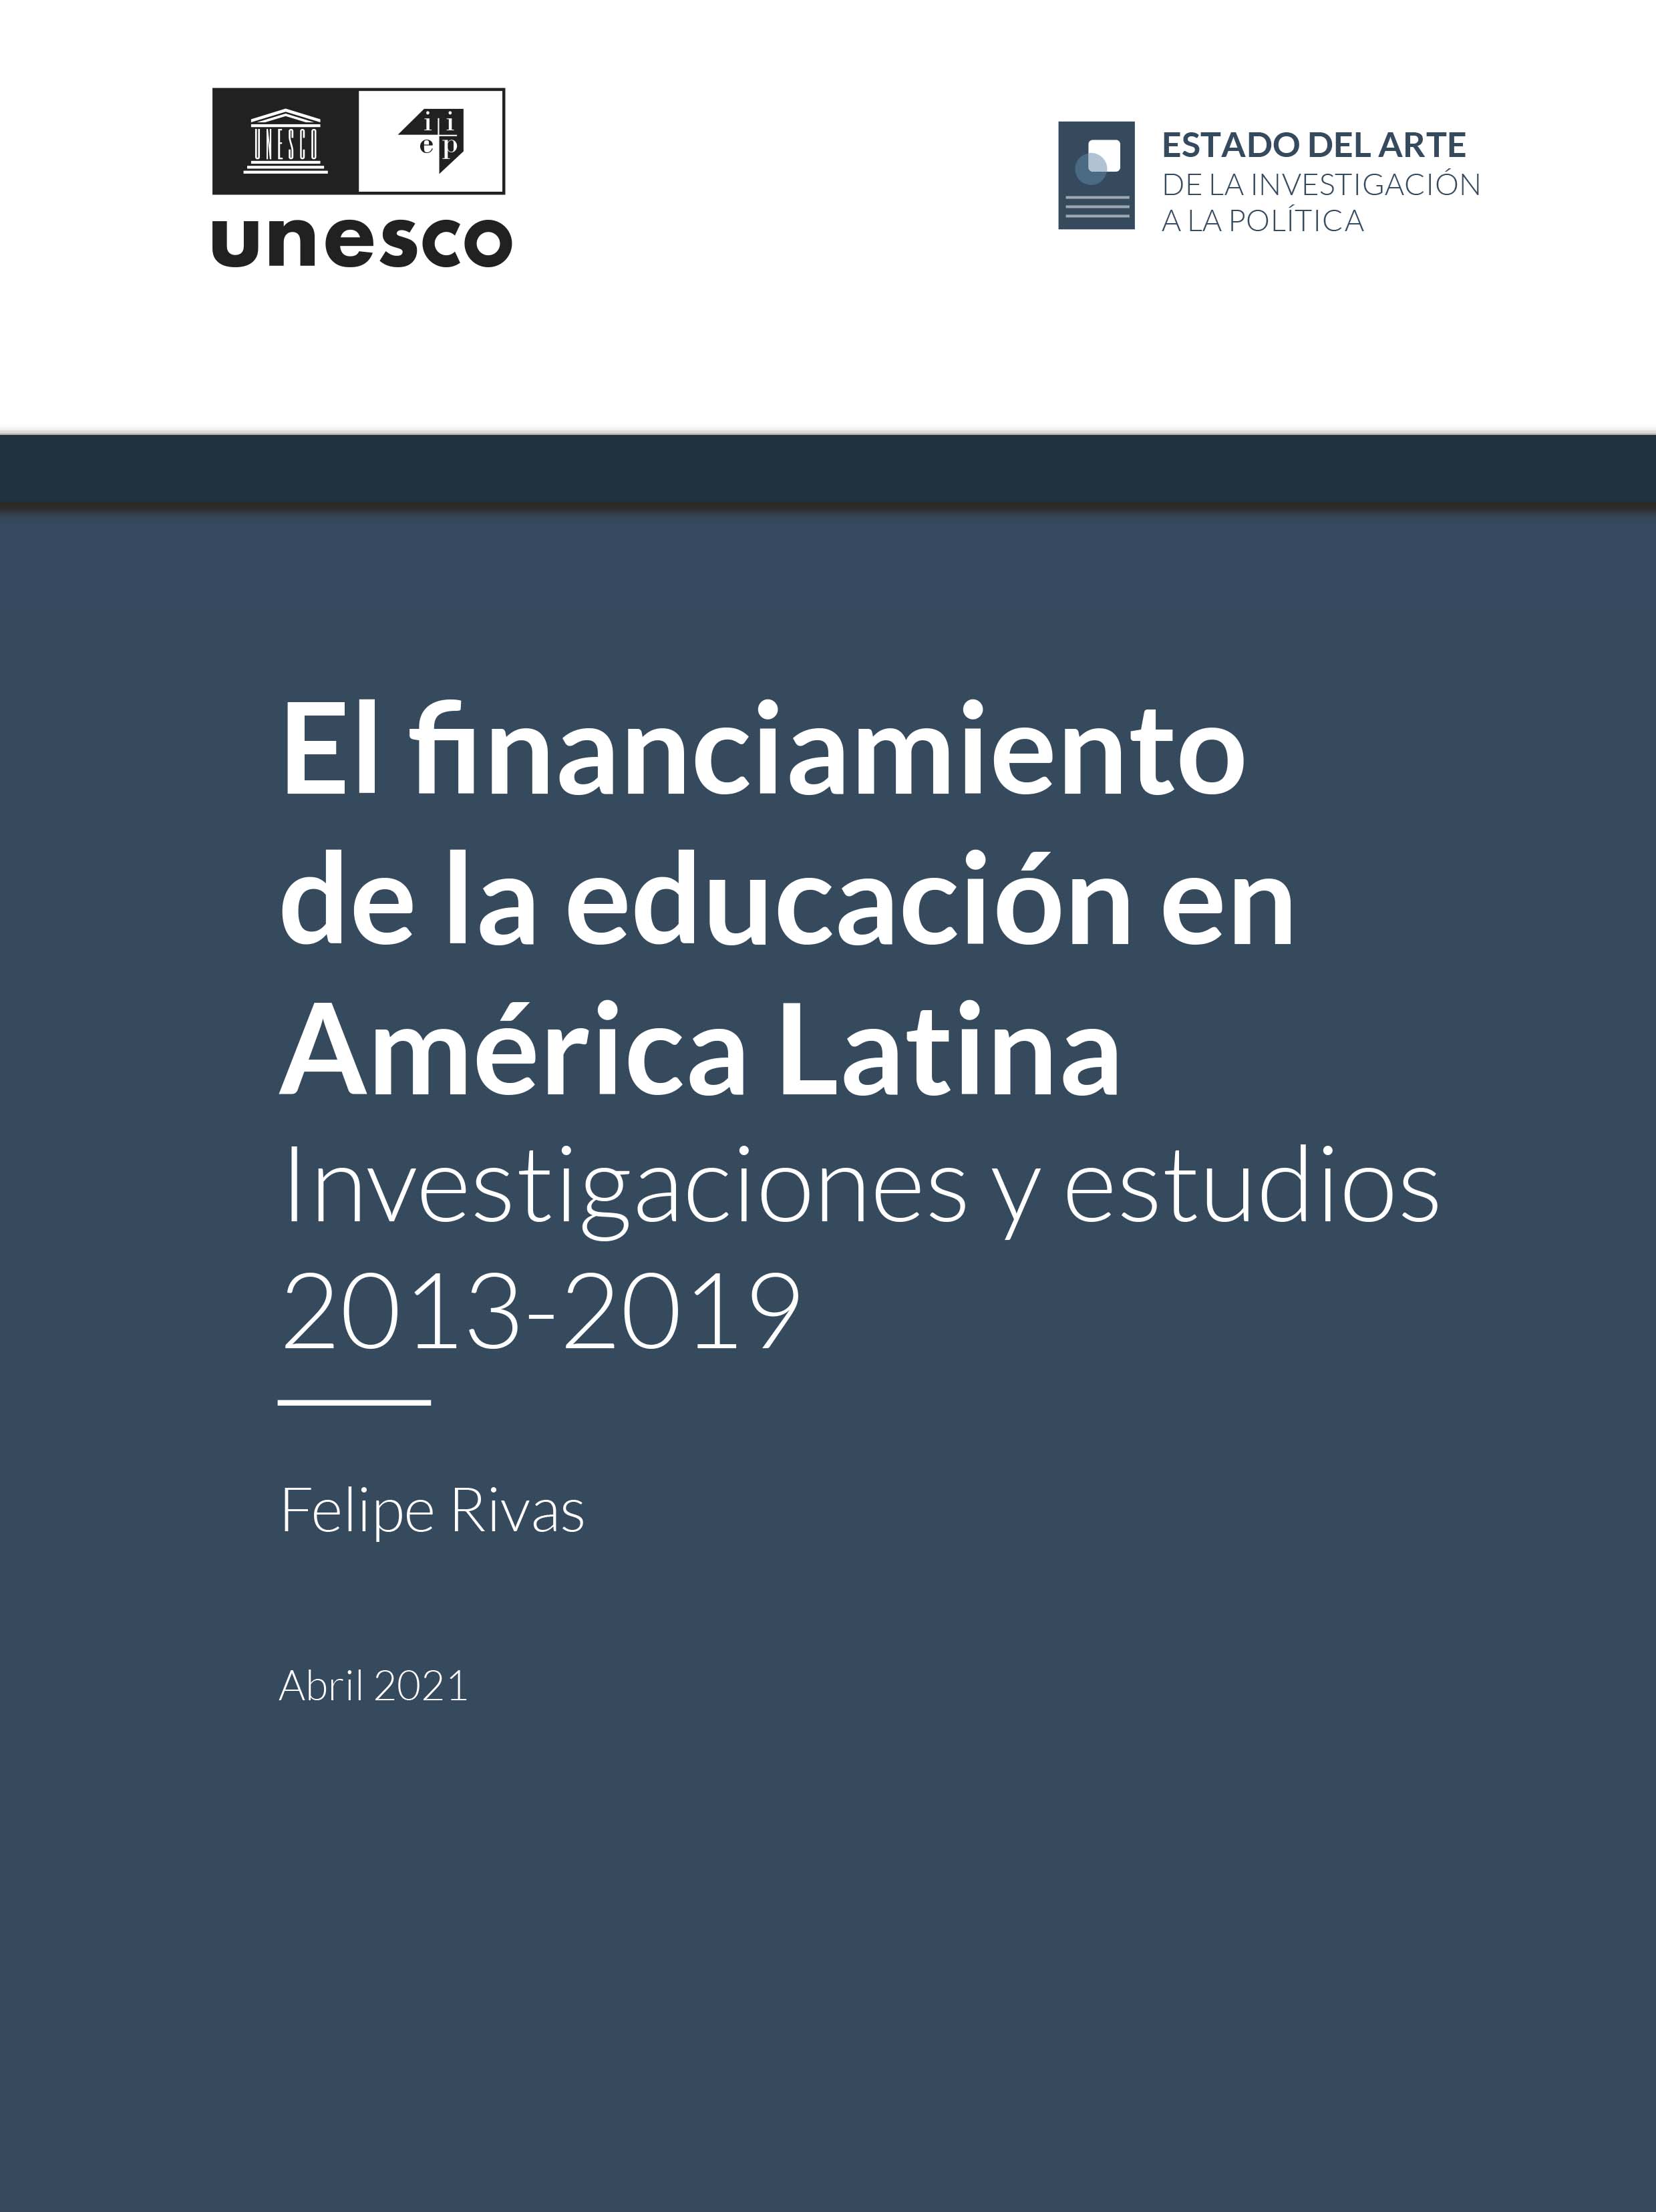 El Financiamiento de la educación en América Latina: investigaciones y estudios 2013-2019